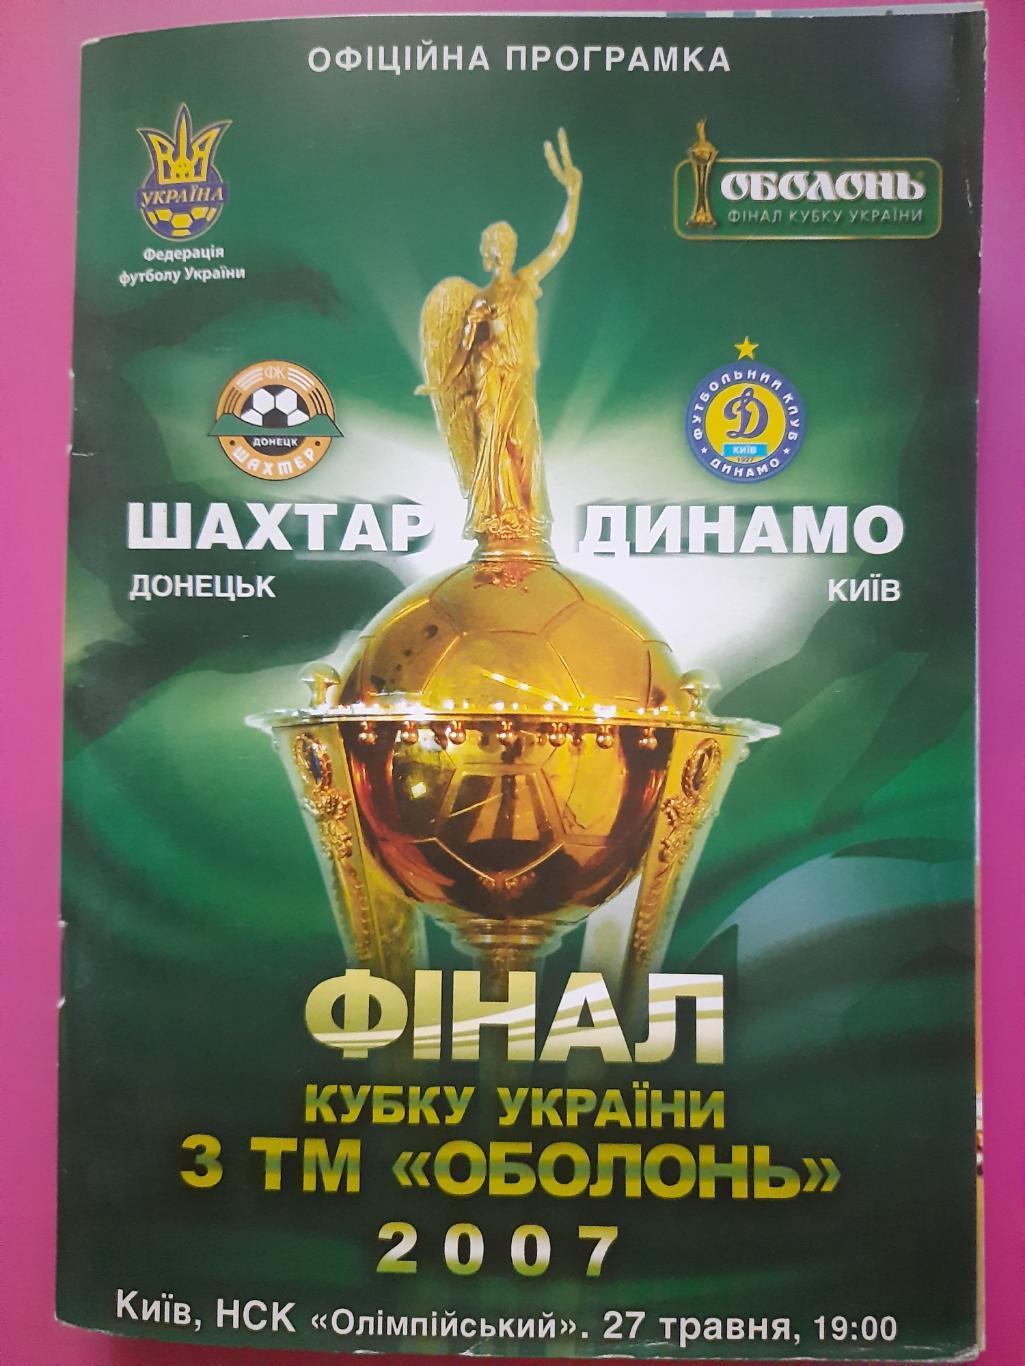 Шахтер Донецк - Динамо Киев 27.05.2007